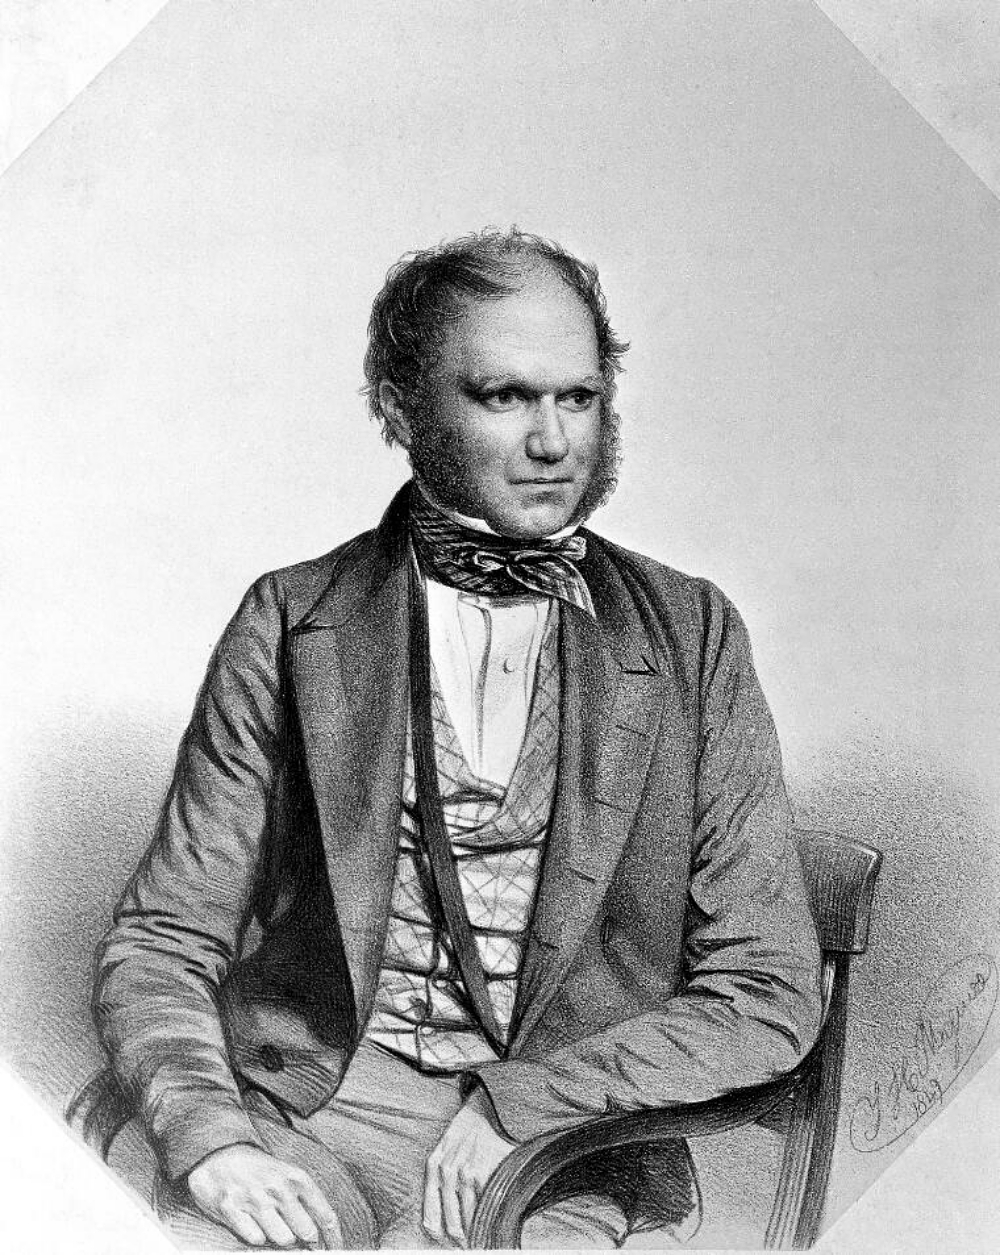 engraving of Charles Darwin at age 40